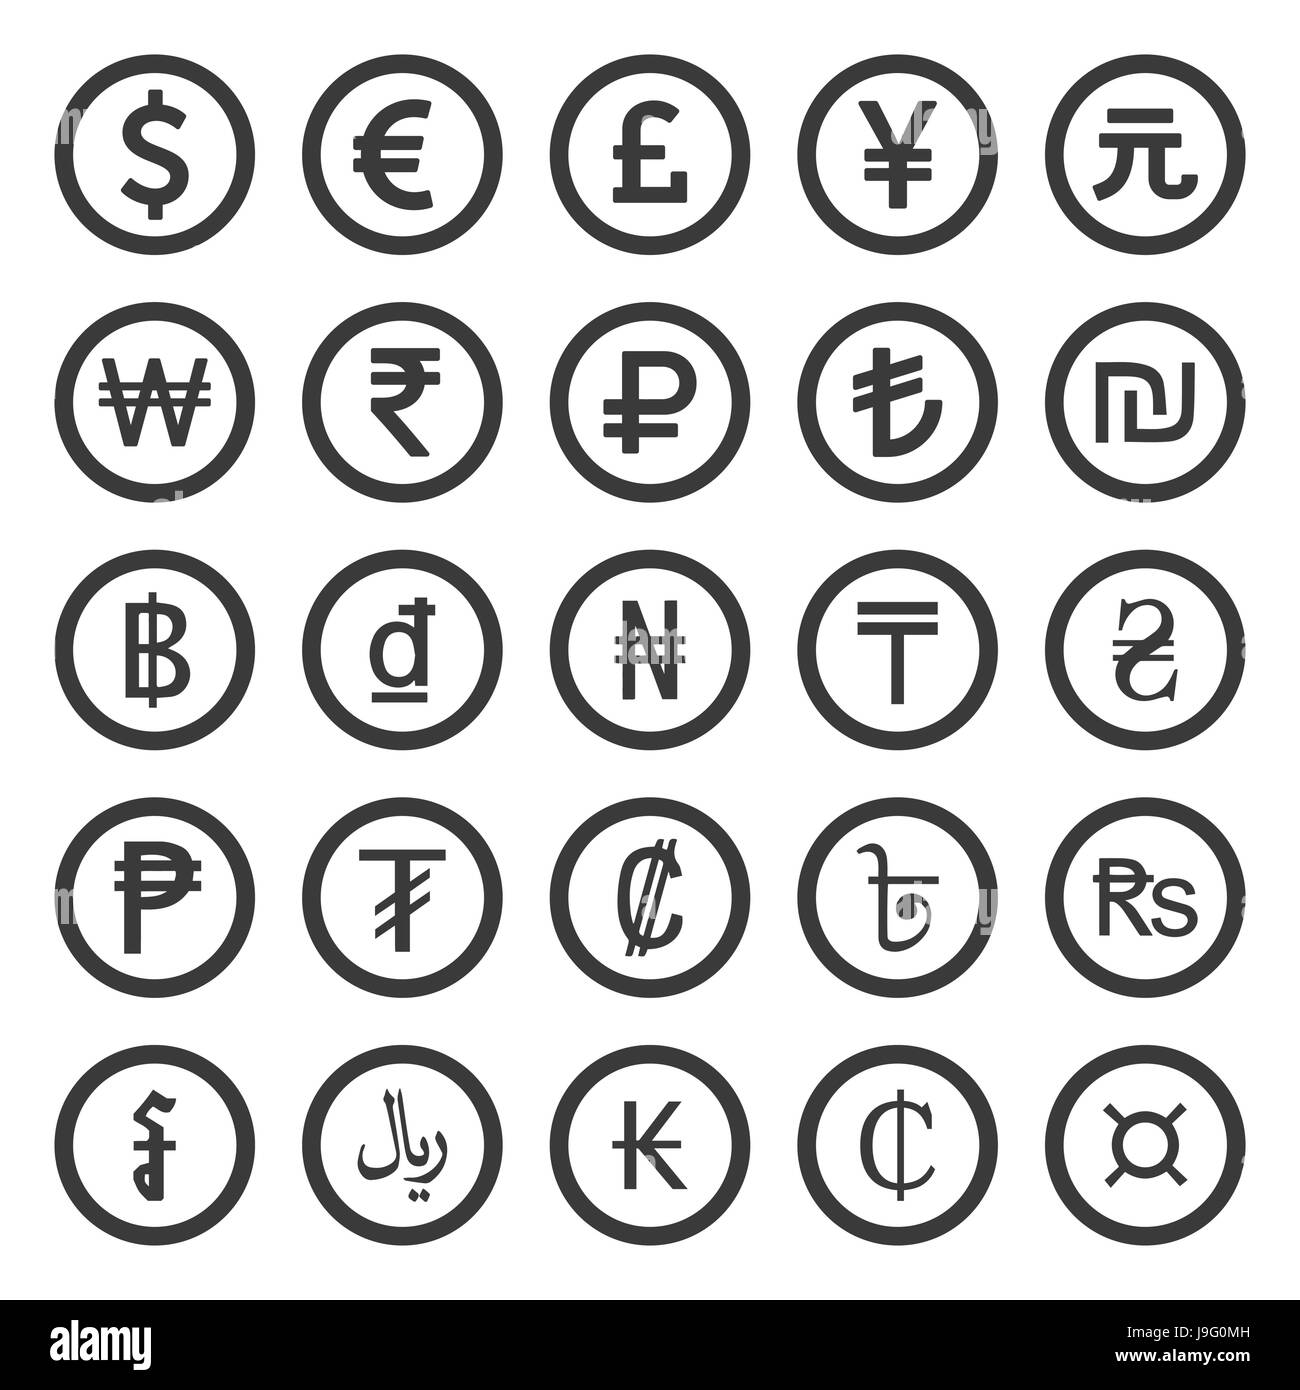 Währung Icons Set. Schwarz auf weißem Hintergrund Stock Vektor